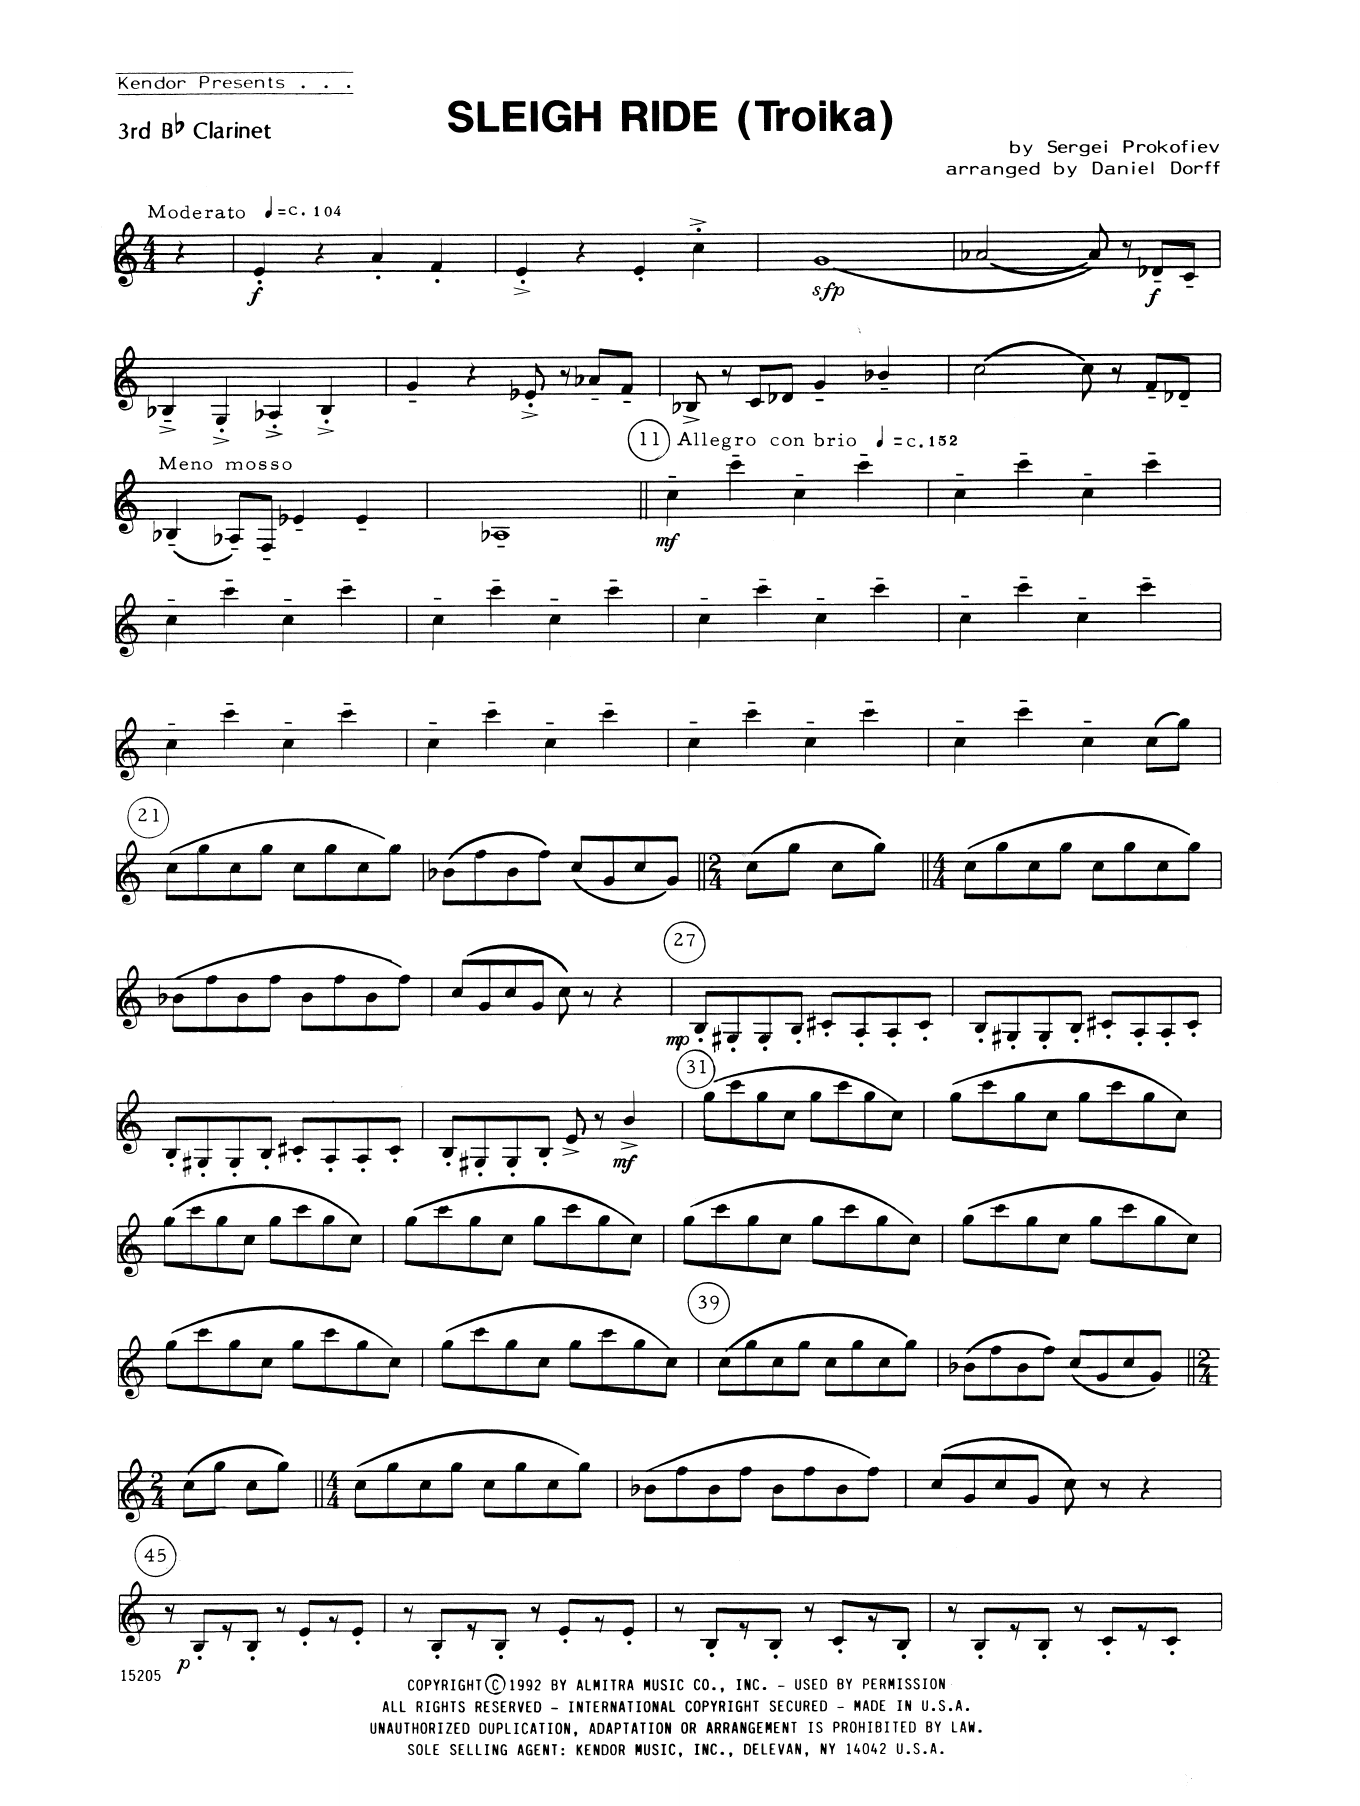 Download Daniel Dorff Sleigh Ride (Troika) - 3rd Bb Clarinet Sheet Music